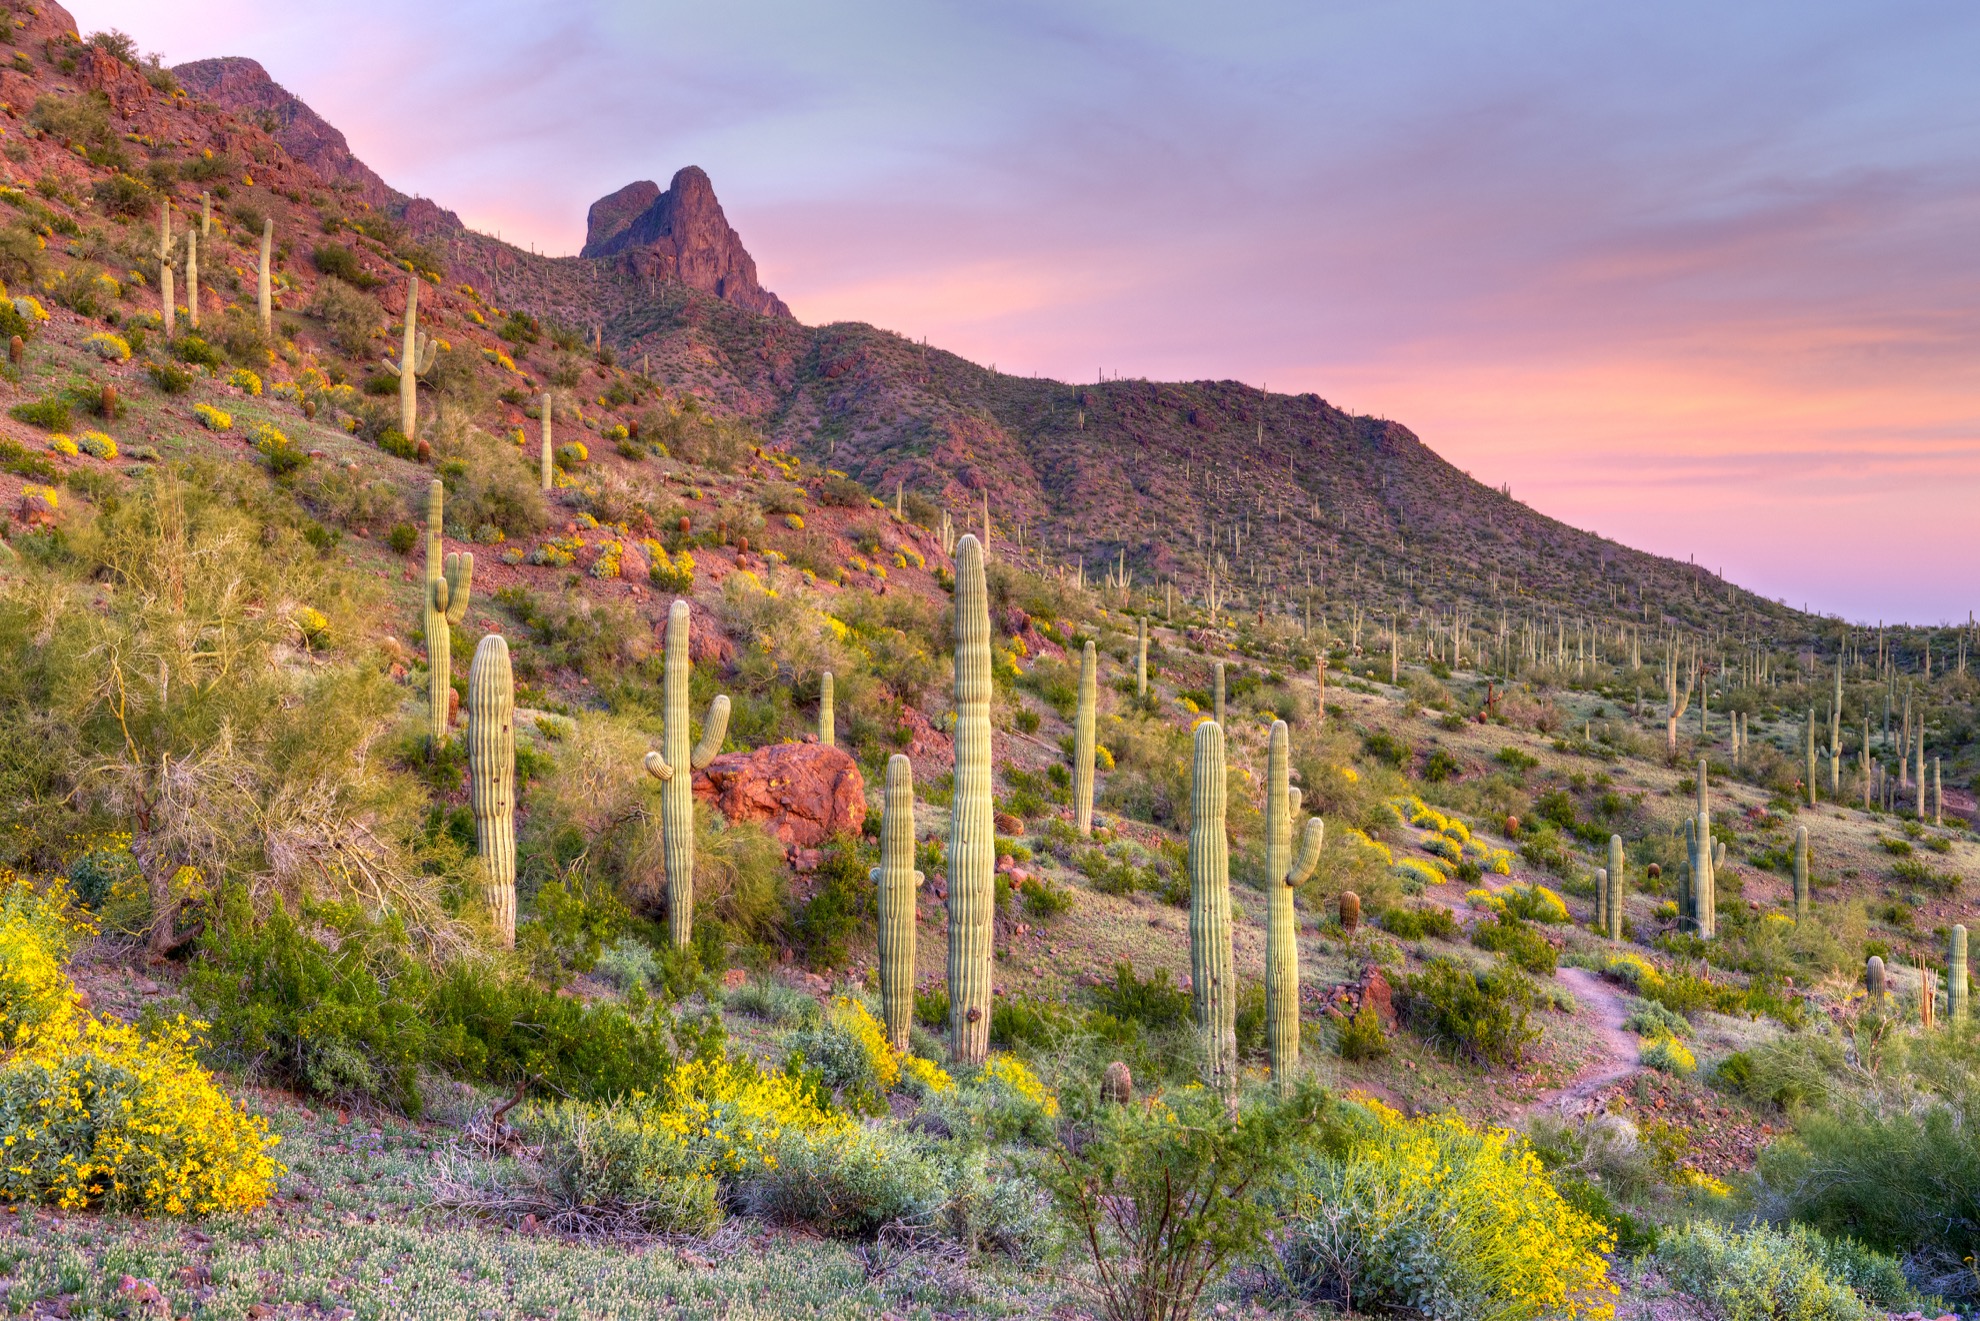 8 Parques estatales de Arizona que pertenecen a su lista de deseos - 19